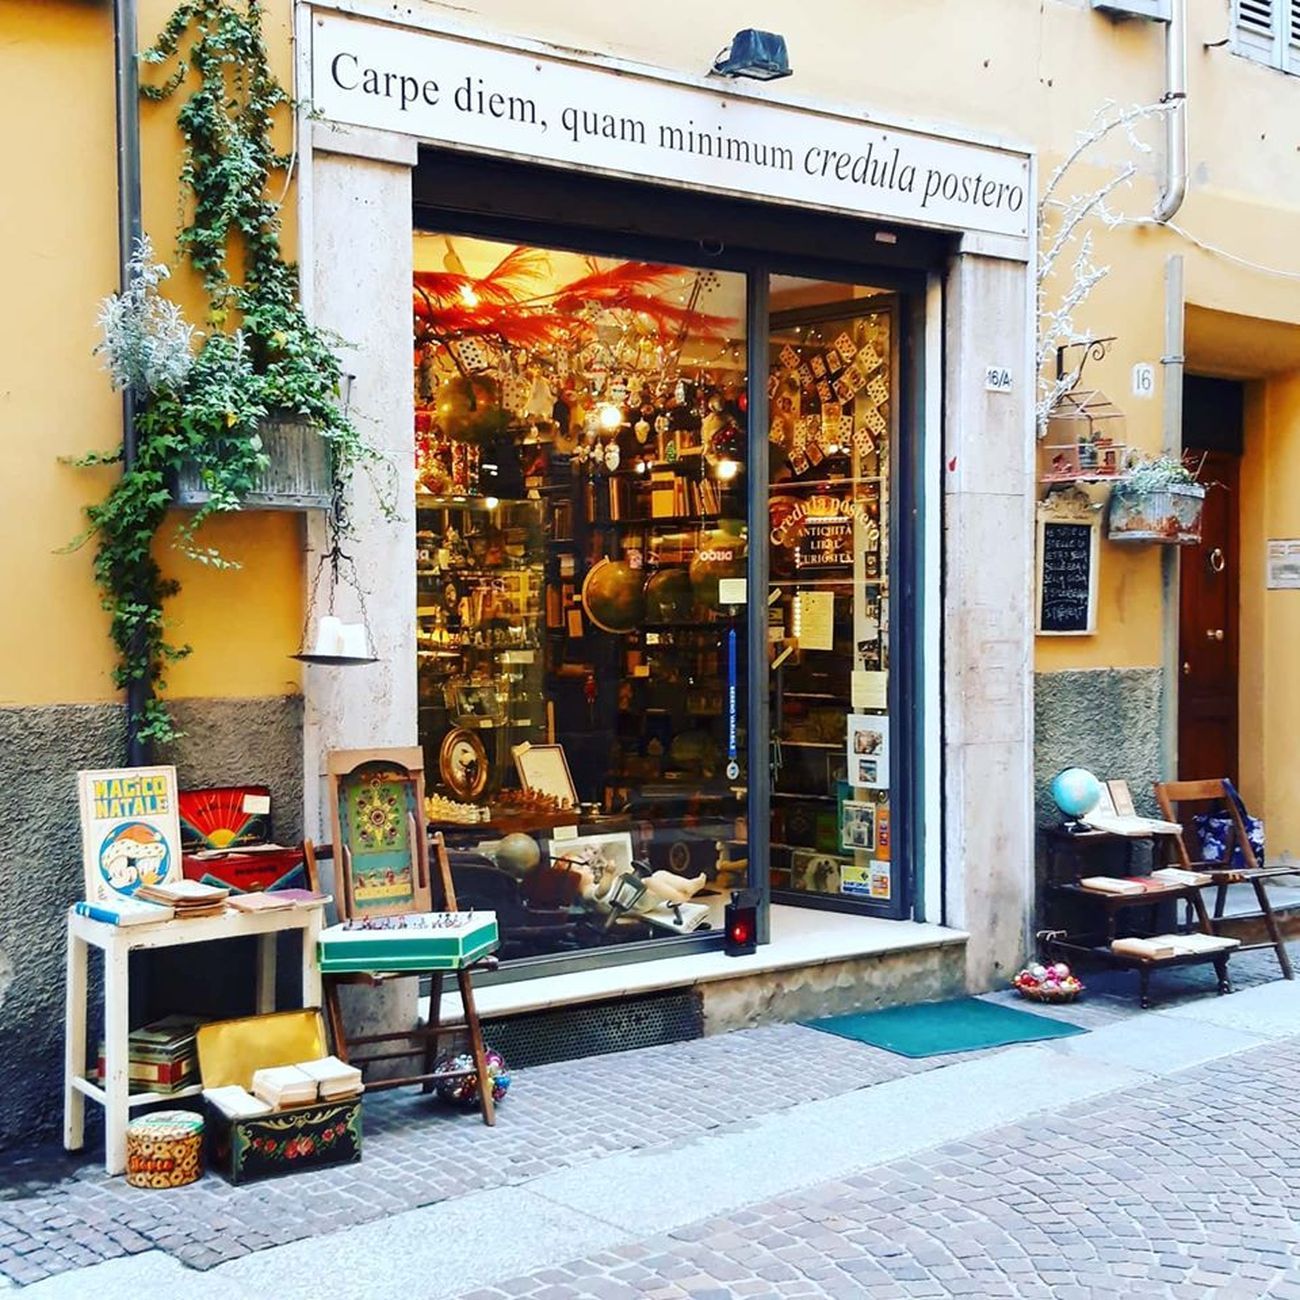 Uno dei negozi della via degli antiquari a Parma